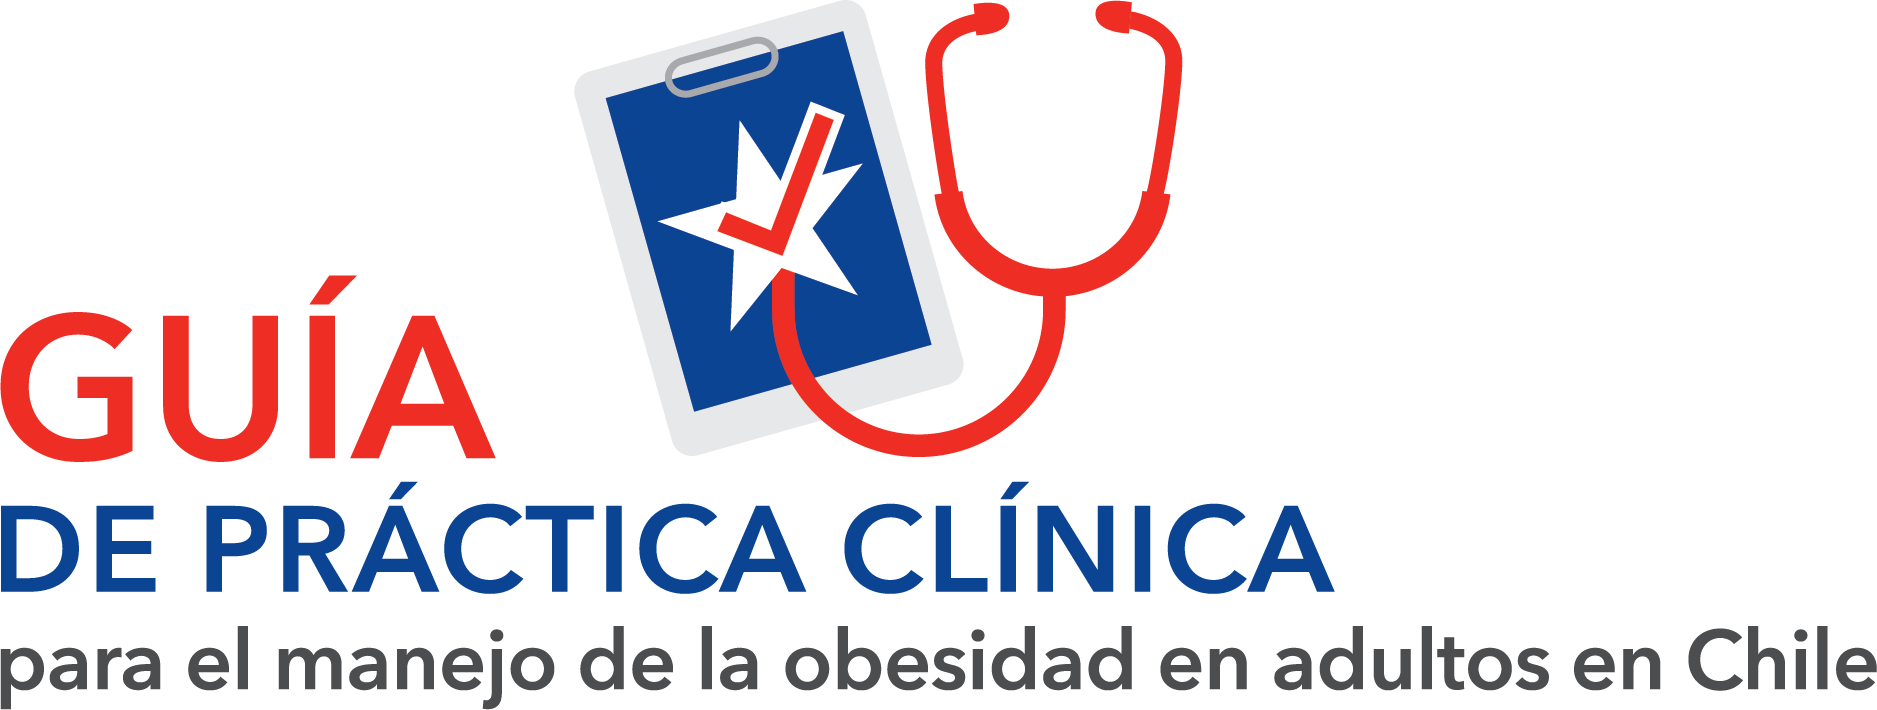 Logo reading "guía de práctica clínica para el manejo de la obesidad en adultos en chile" with an image of a smartphone and stethoscope.